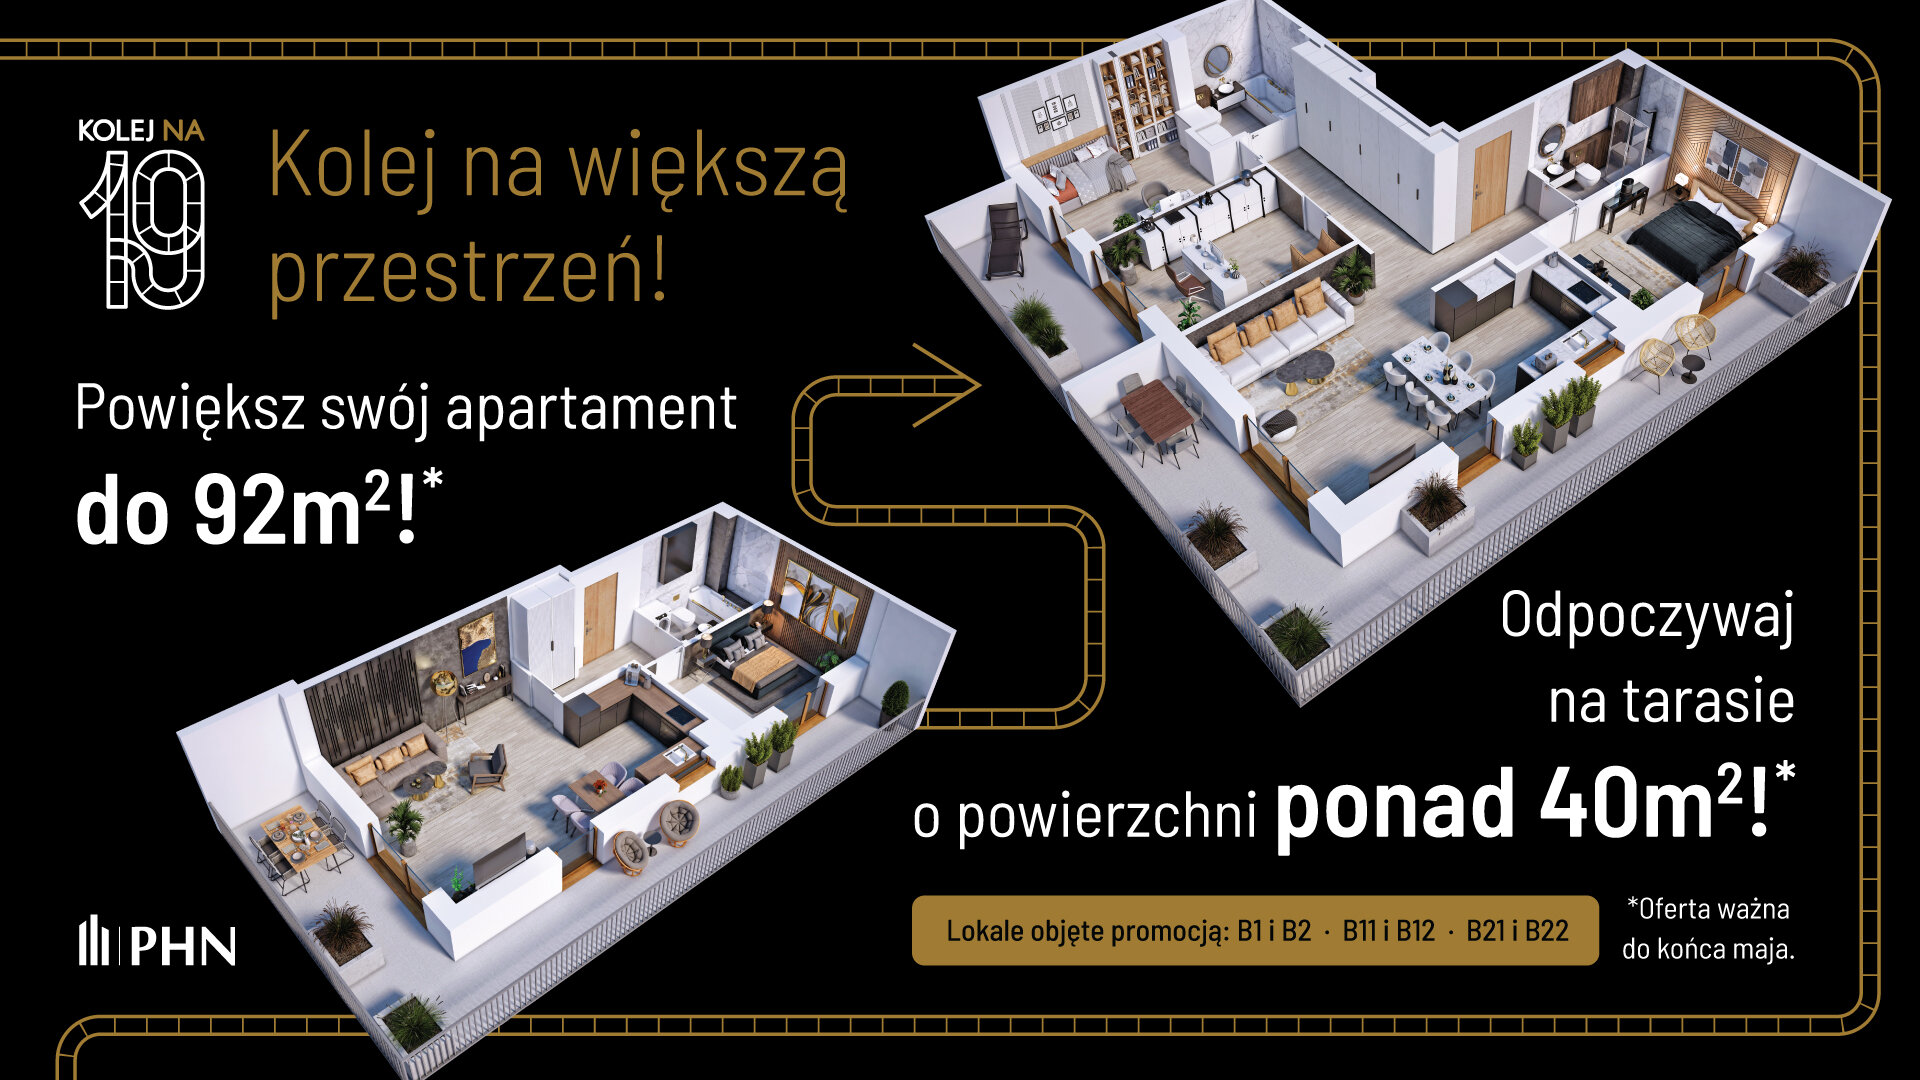 Wiosenna promocja w KOLEJ NA 19 - Apartament, 3 pokoje, Warszawa,60.78 m²,1 054 533 zł